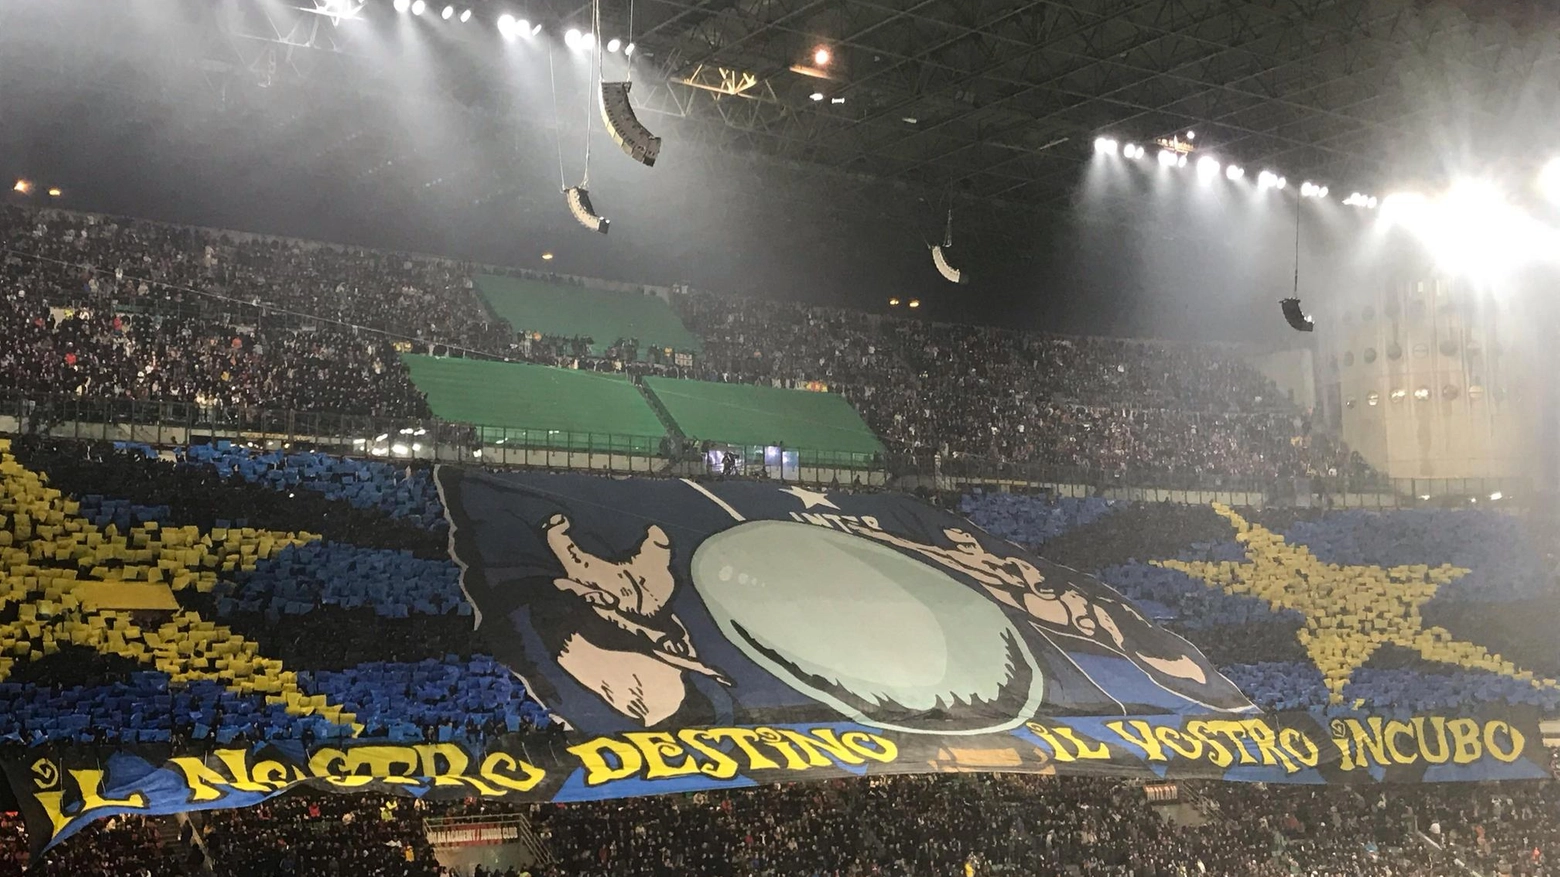 L'Inter festeggia il ventesimo scudetto dopo la vittoria nel derby contro il Milan. I tifosi si preparano per i festeggiamenti, mentre sul fronte rossonero si parla dell'addio di Pioli.